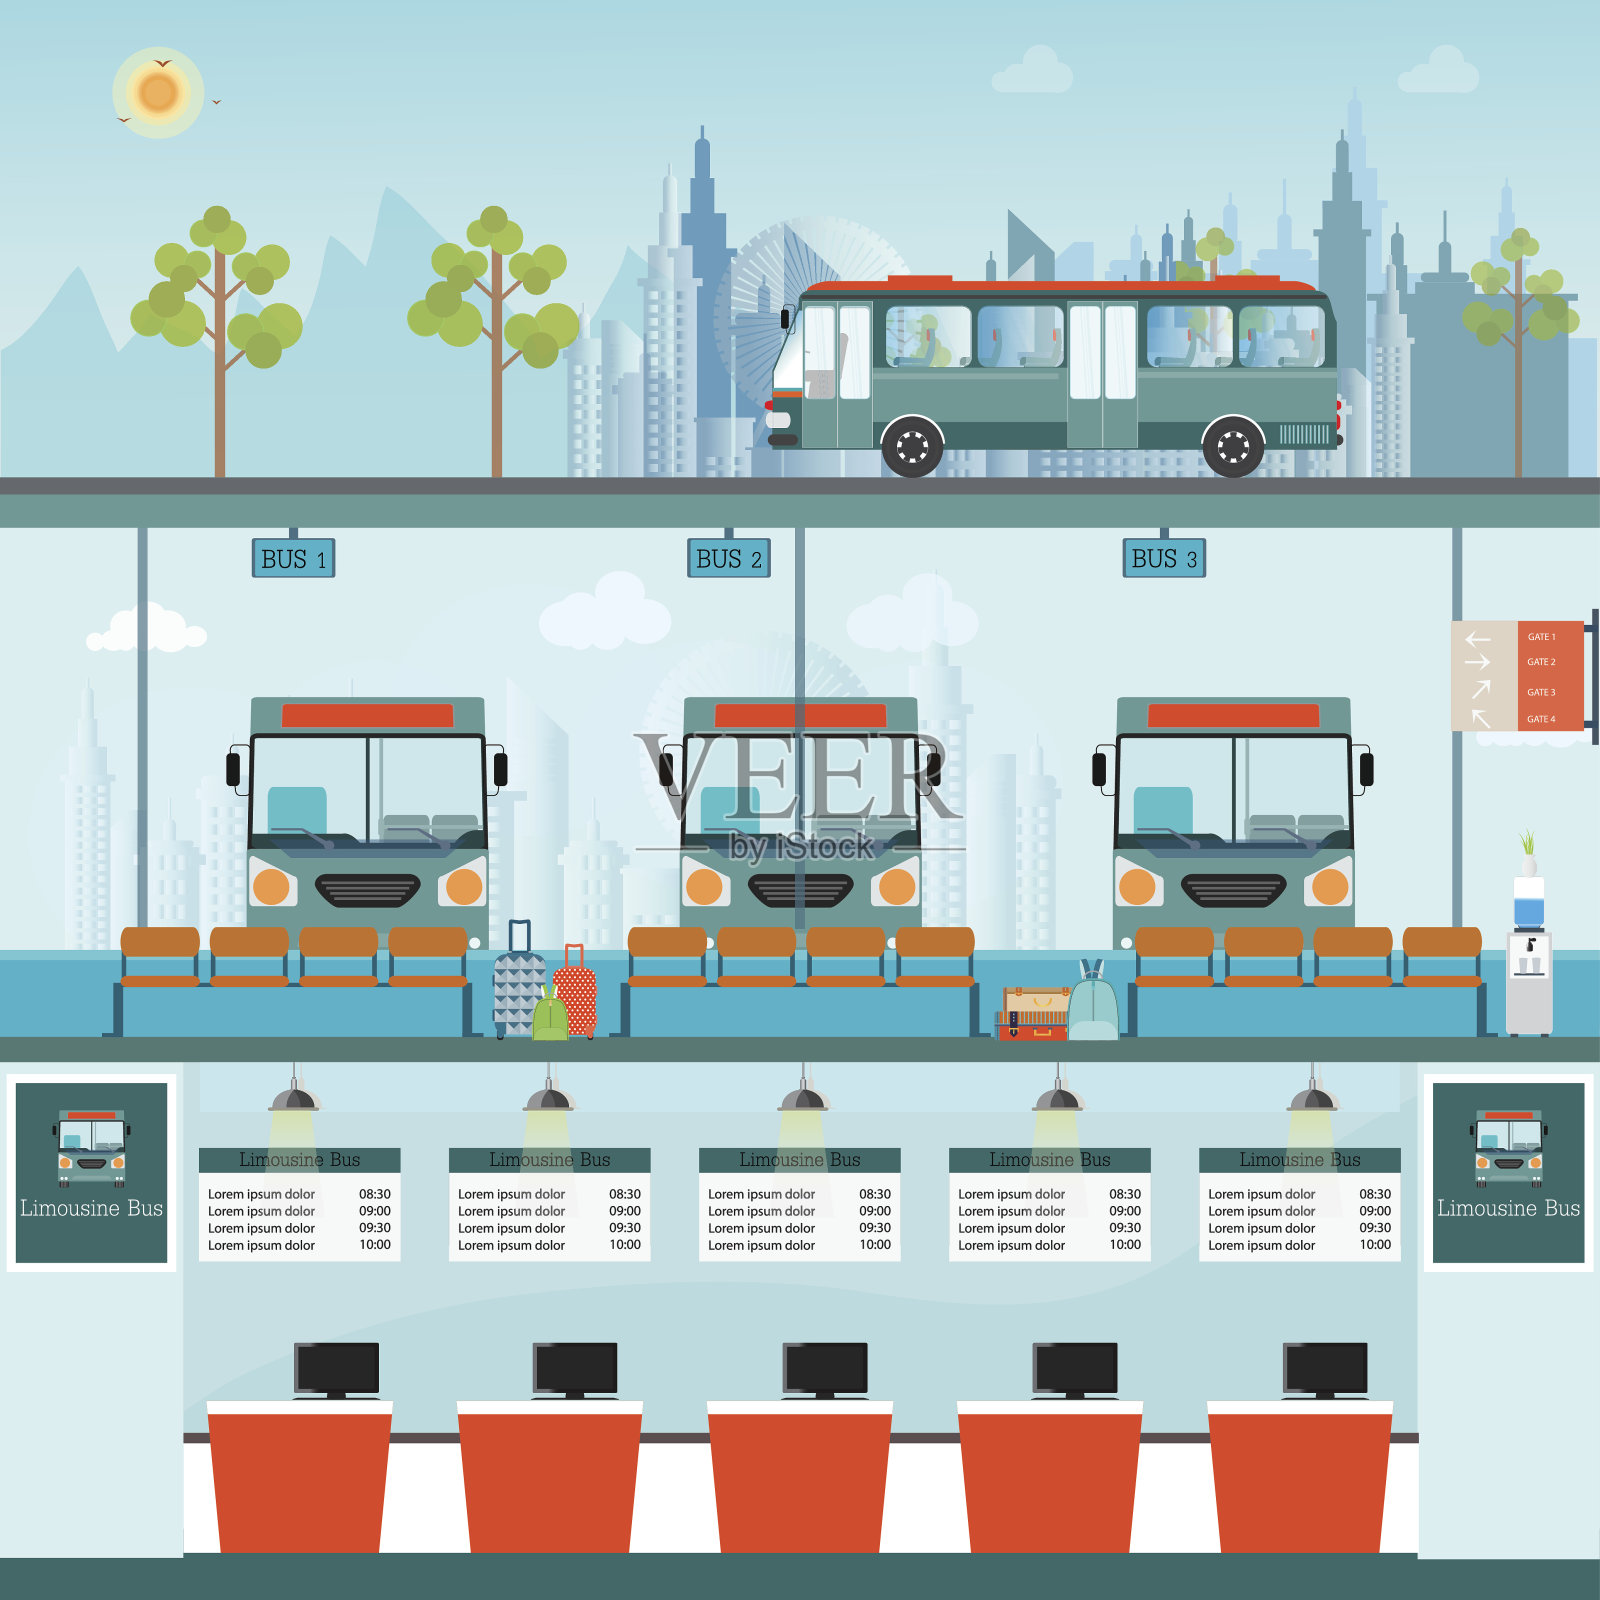 巴士终点站，巴士巴士，巴士巴士，柜台服务和等待巴士。插画图片素材